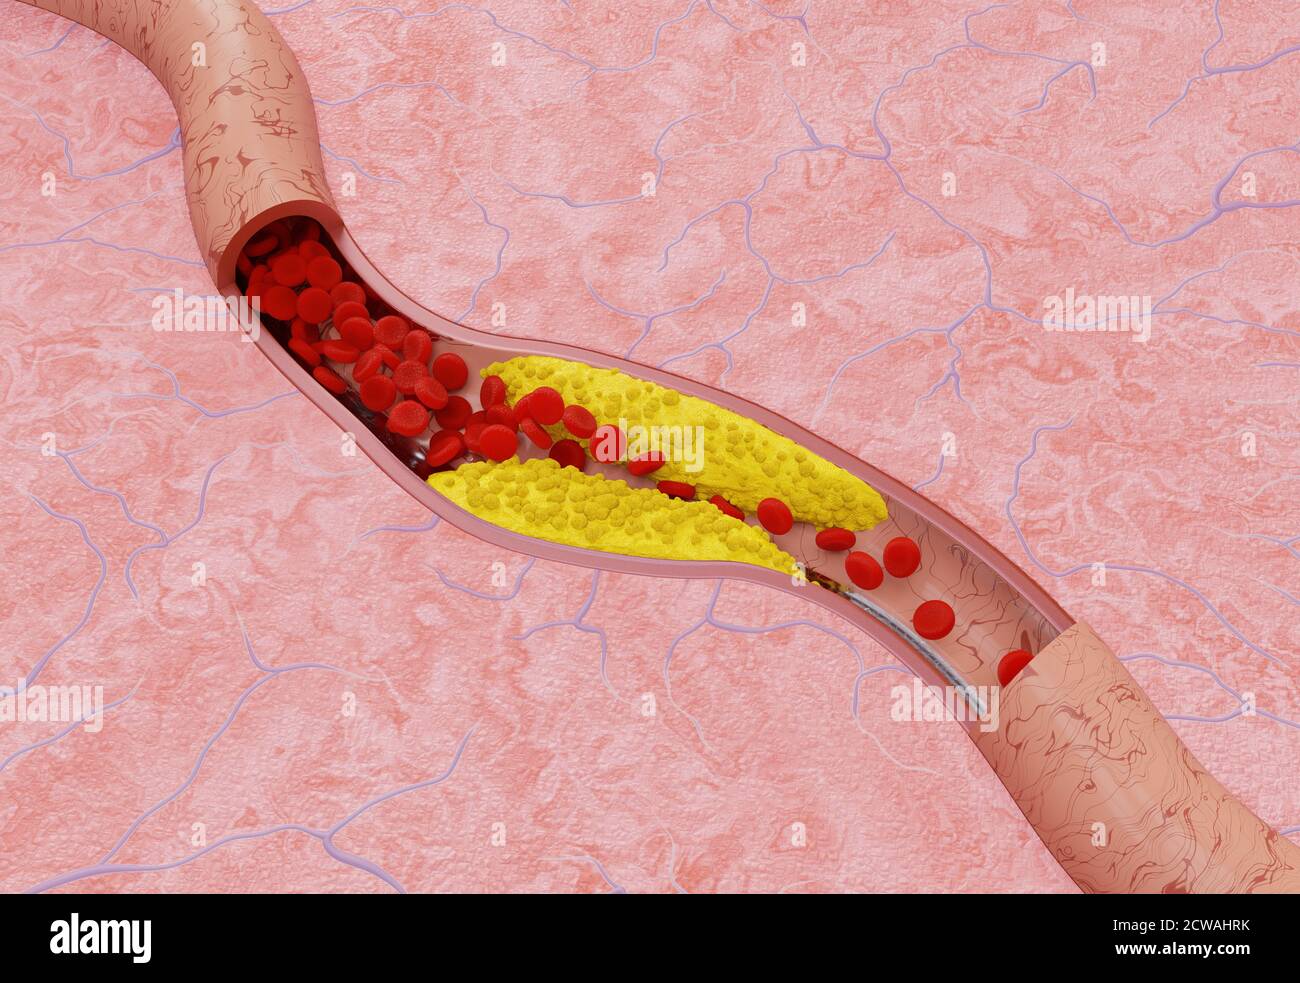 Aterosclerosis en la arteria. Concepto médico. Ilustración 3D Foto de stock